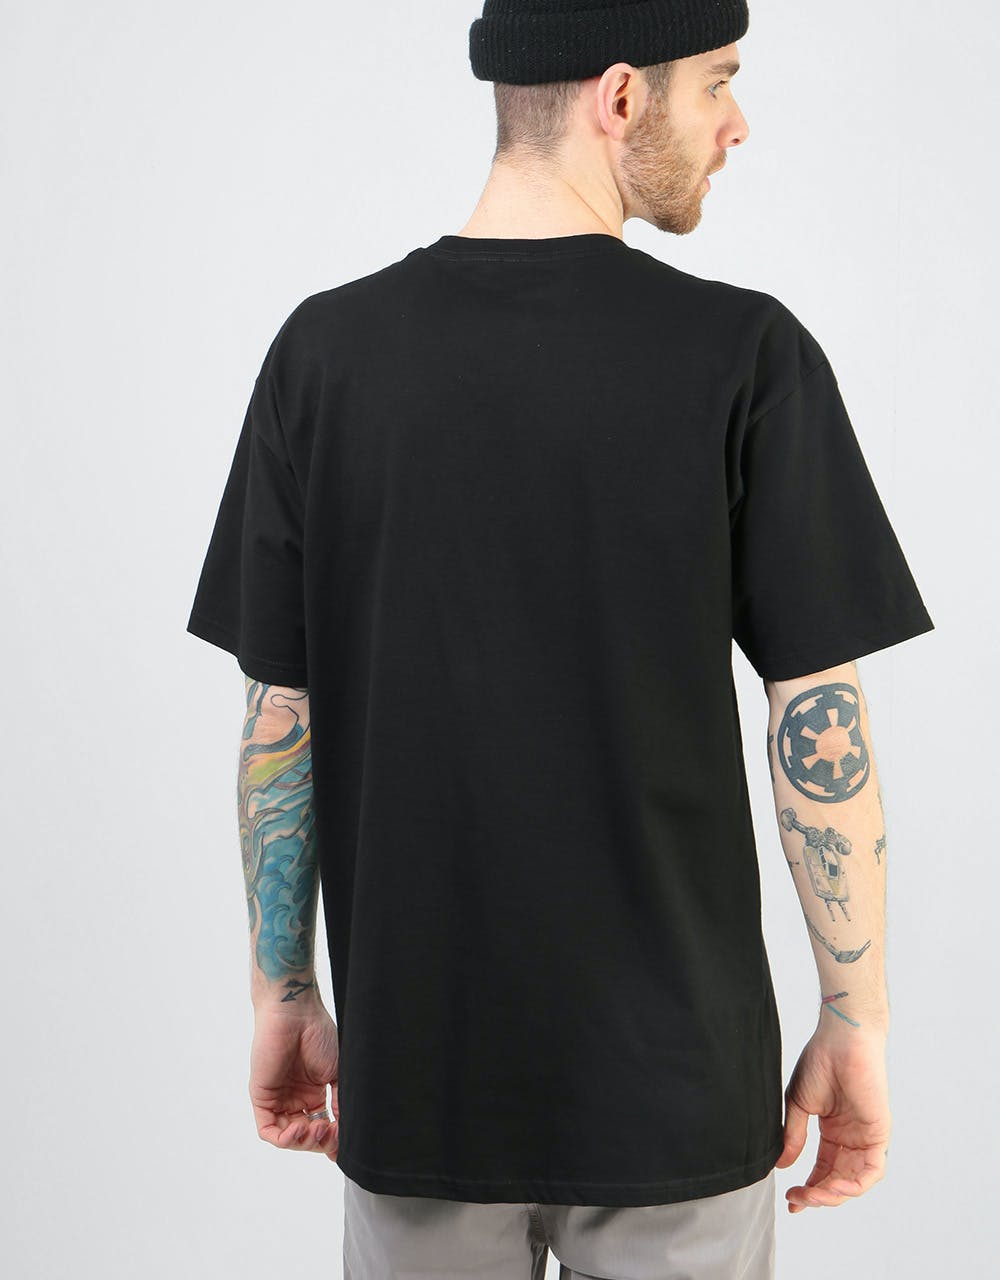 Zero Single Skull T-Shirt - Black/White